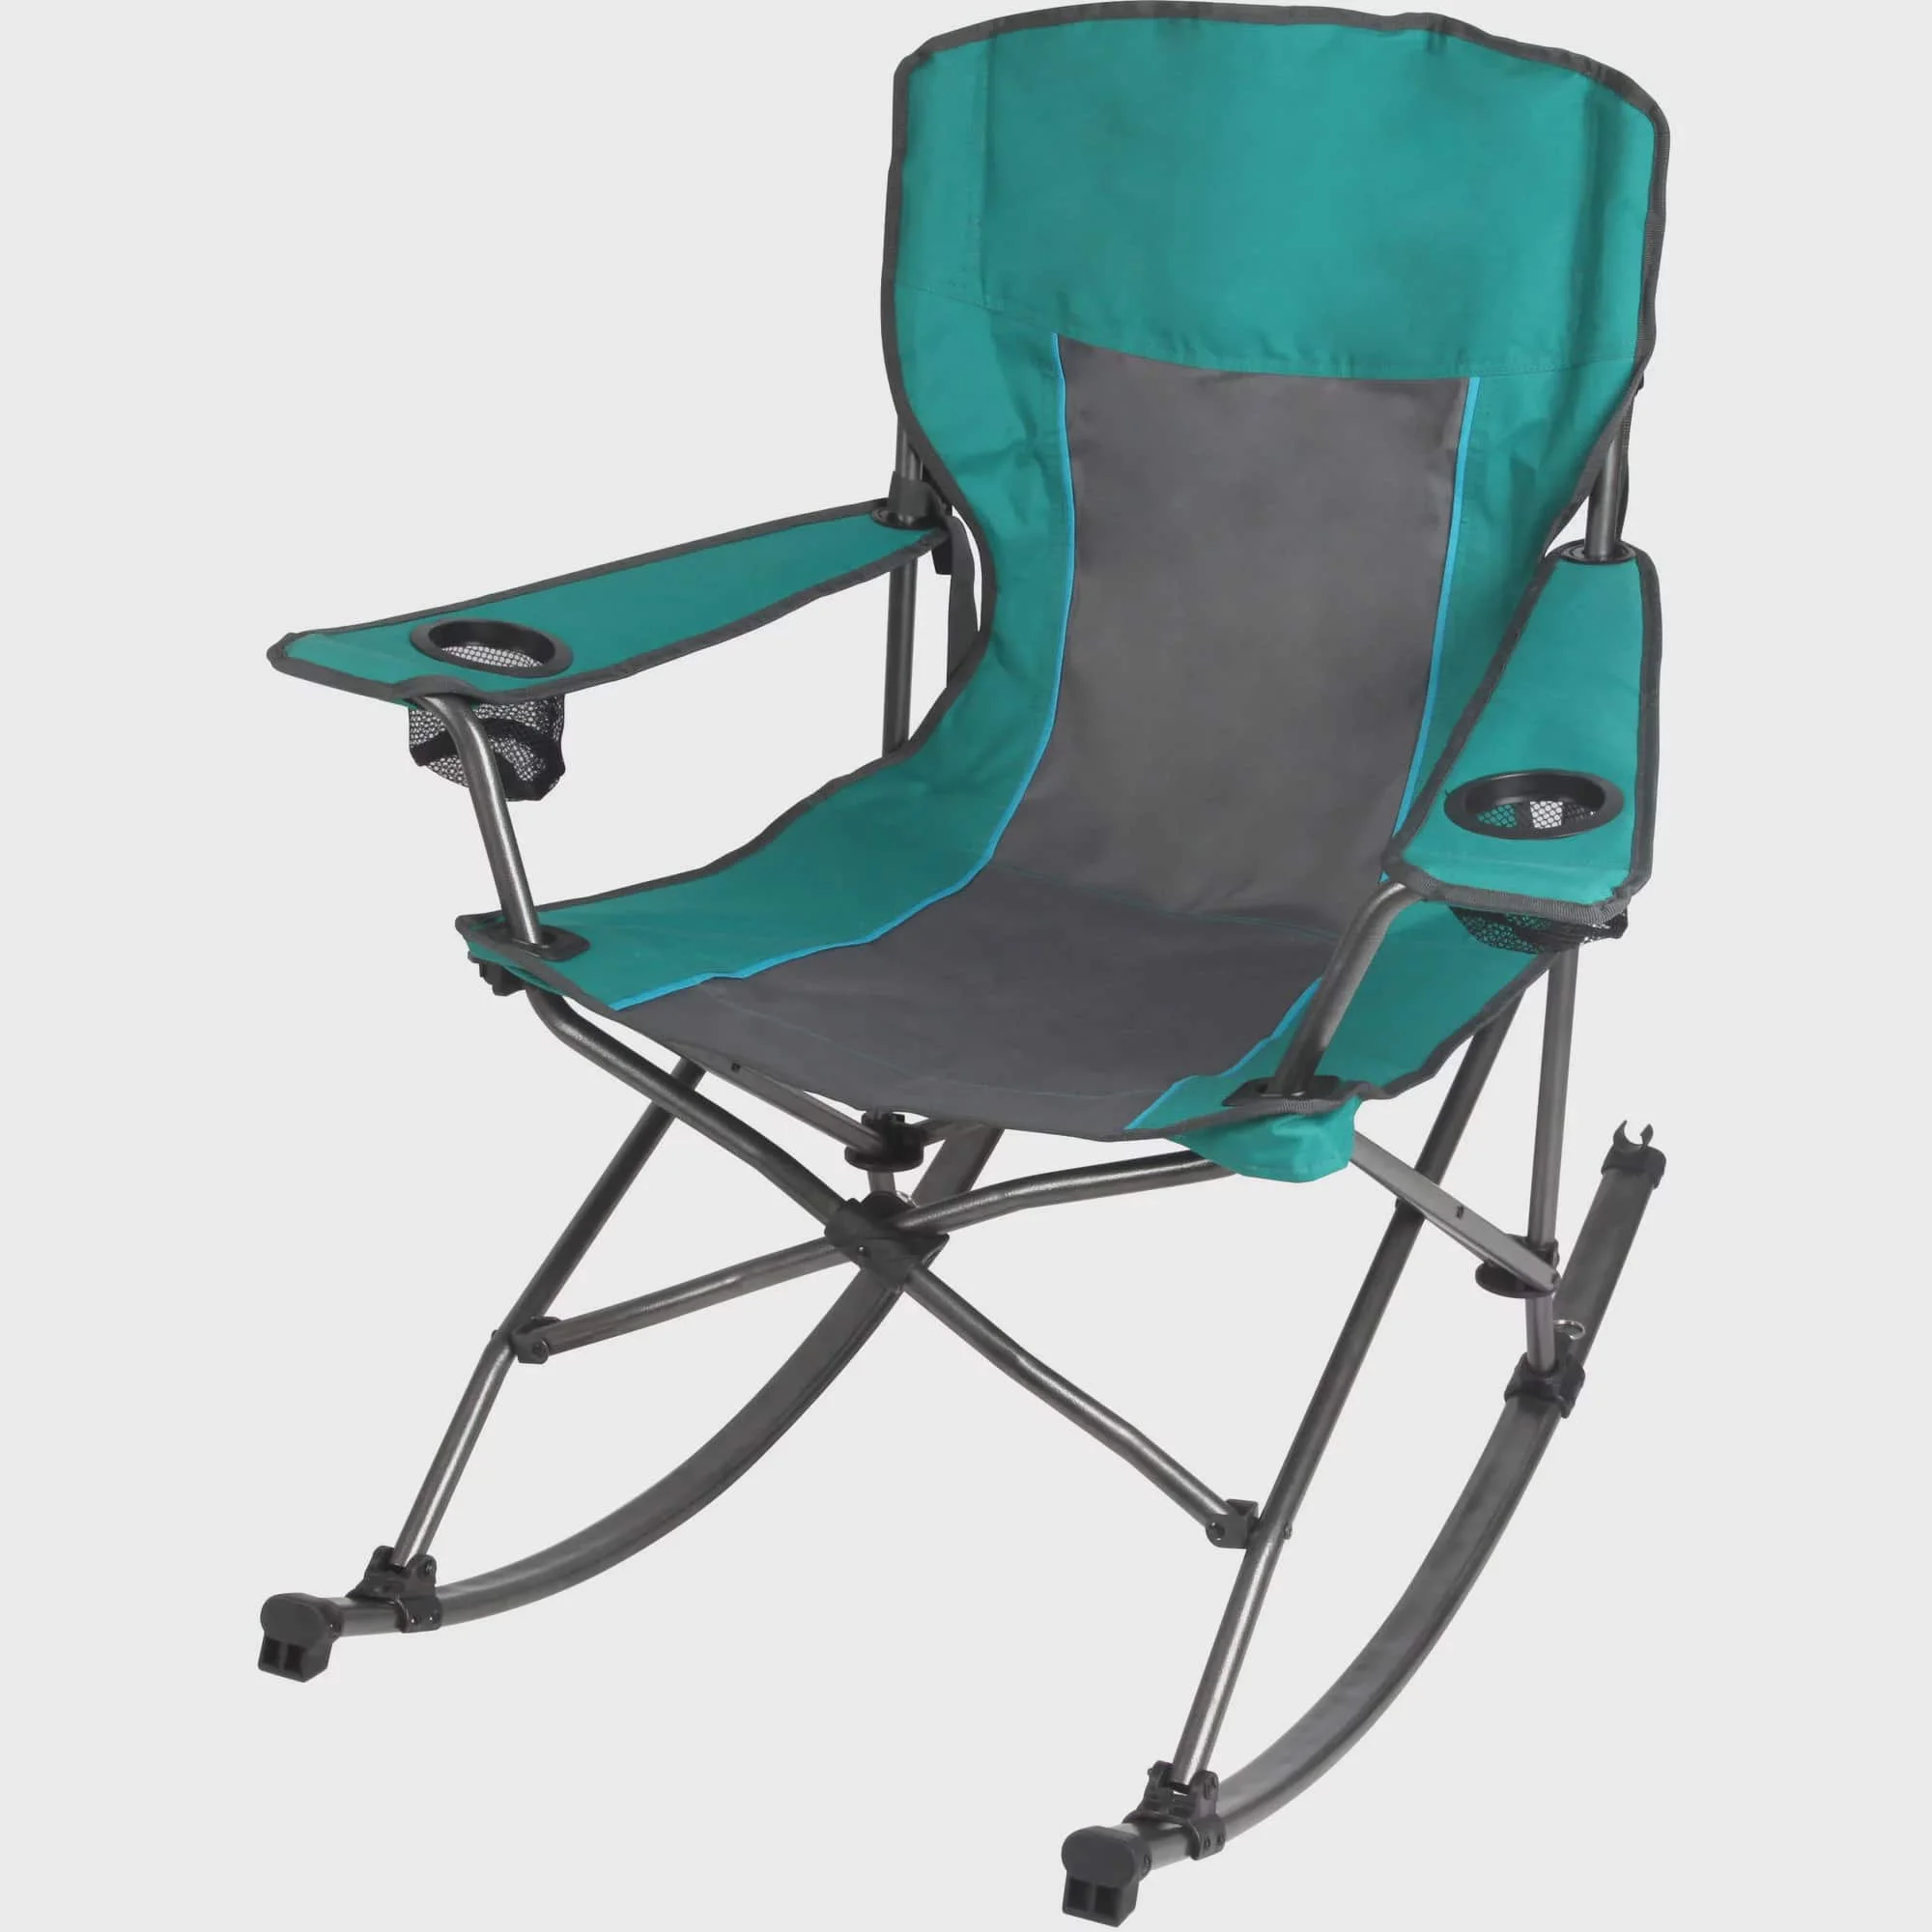 

Складное комфортное кресло-качалка для кемпинга, зеленое, емкость 300 фунтов, для взрослых